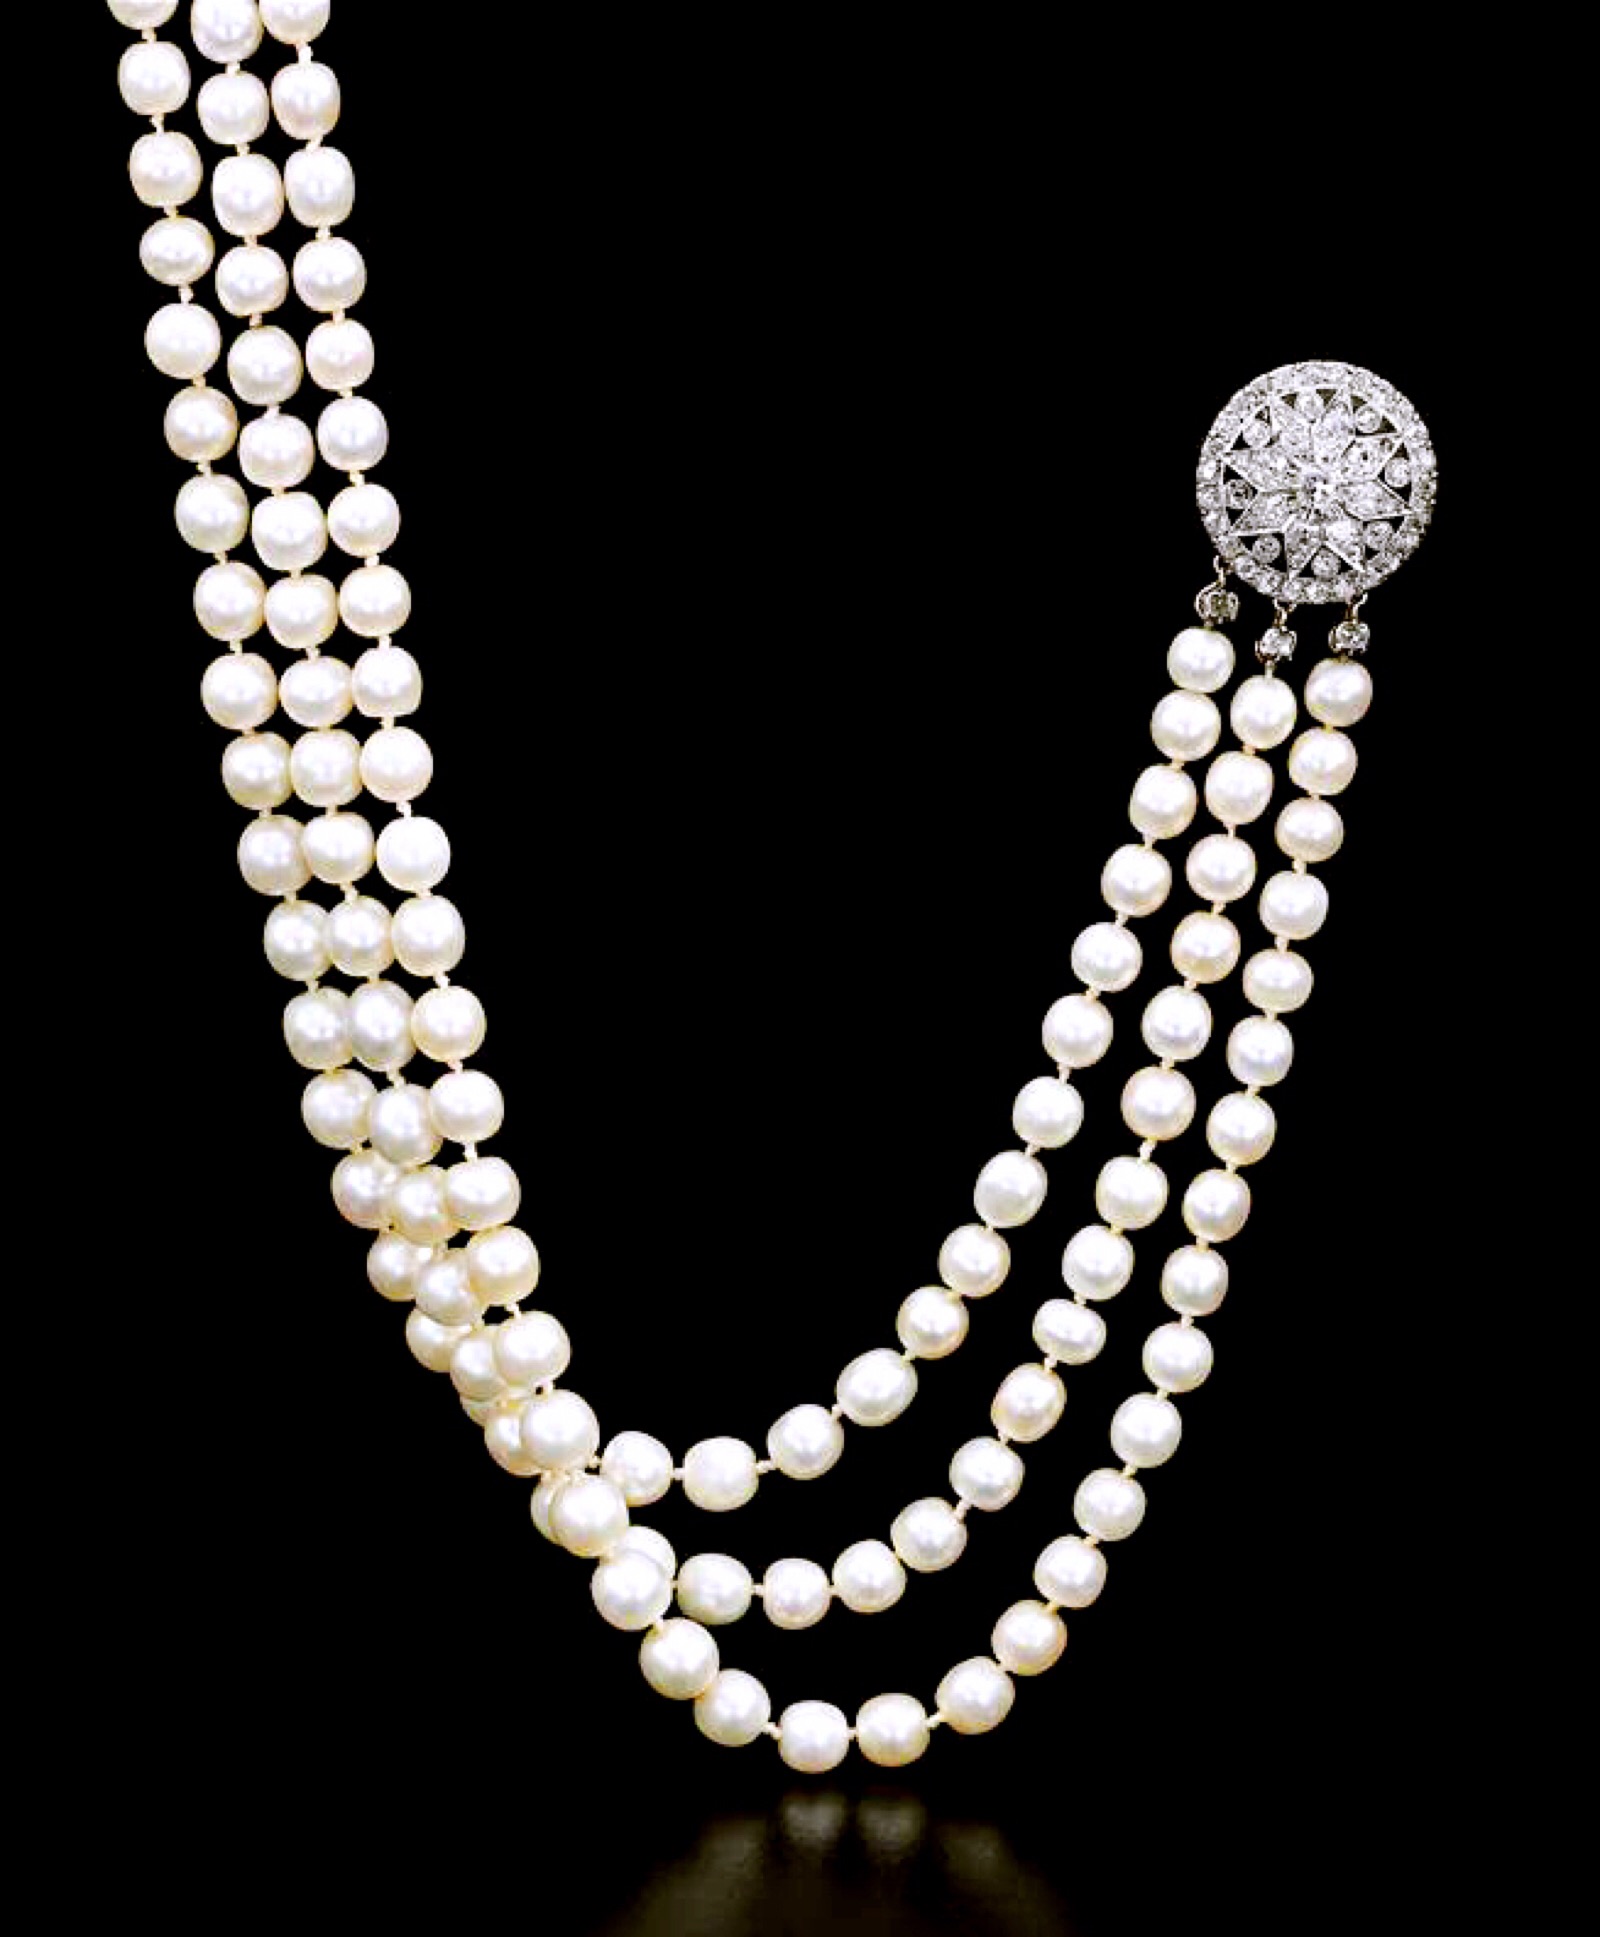 安东尼特的天然野生珍珠项链,后来被意大利的波旁两西西里王室收藏